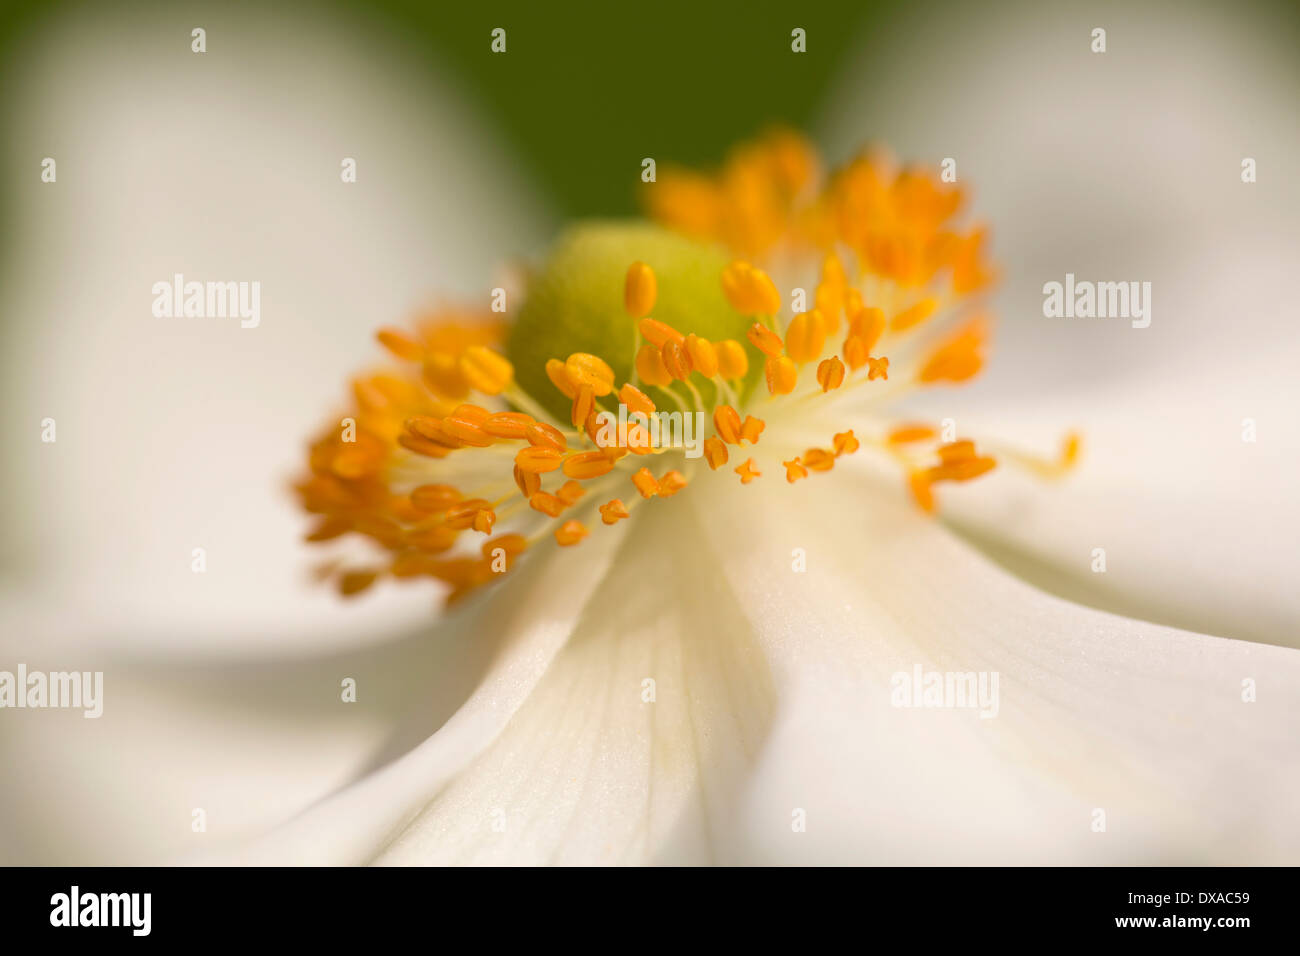 Japanese anemone, Anemone x hybrida 'Honorine Jobert', close up view showing orange stamen. Stock Photo